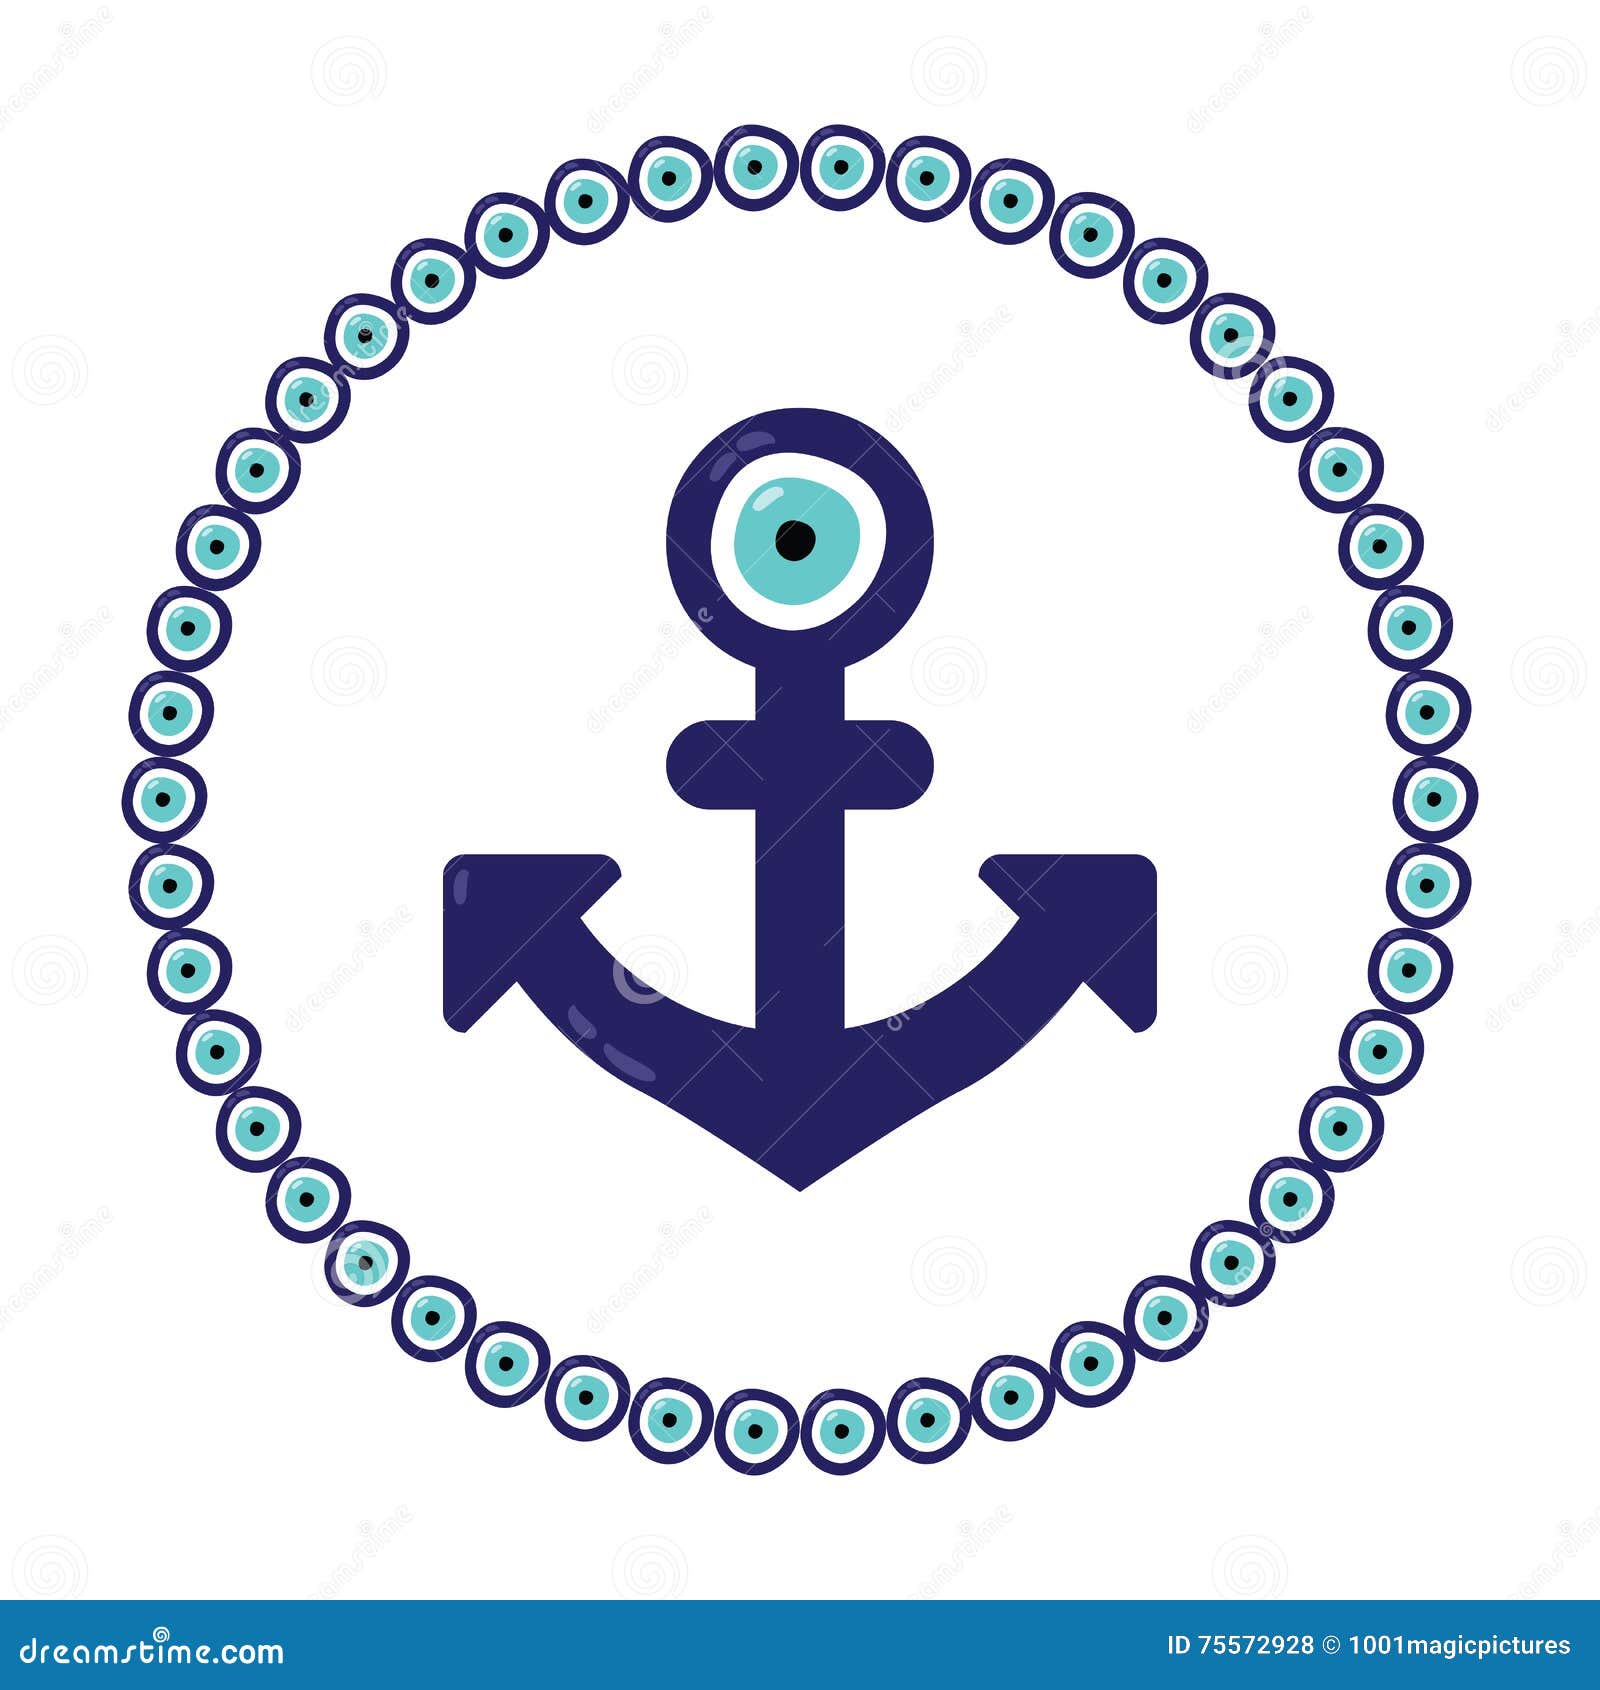 anchor nazar blue